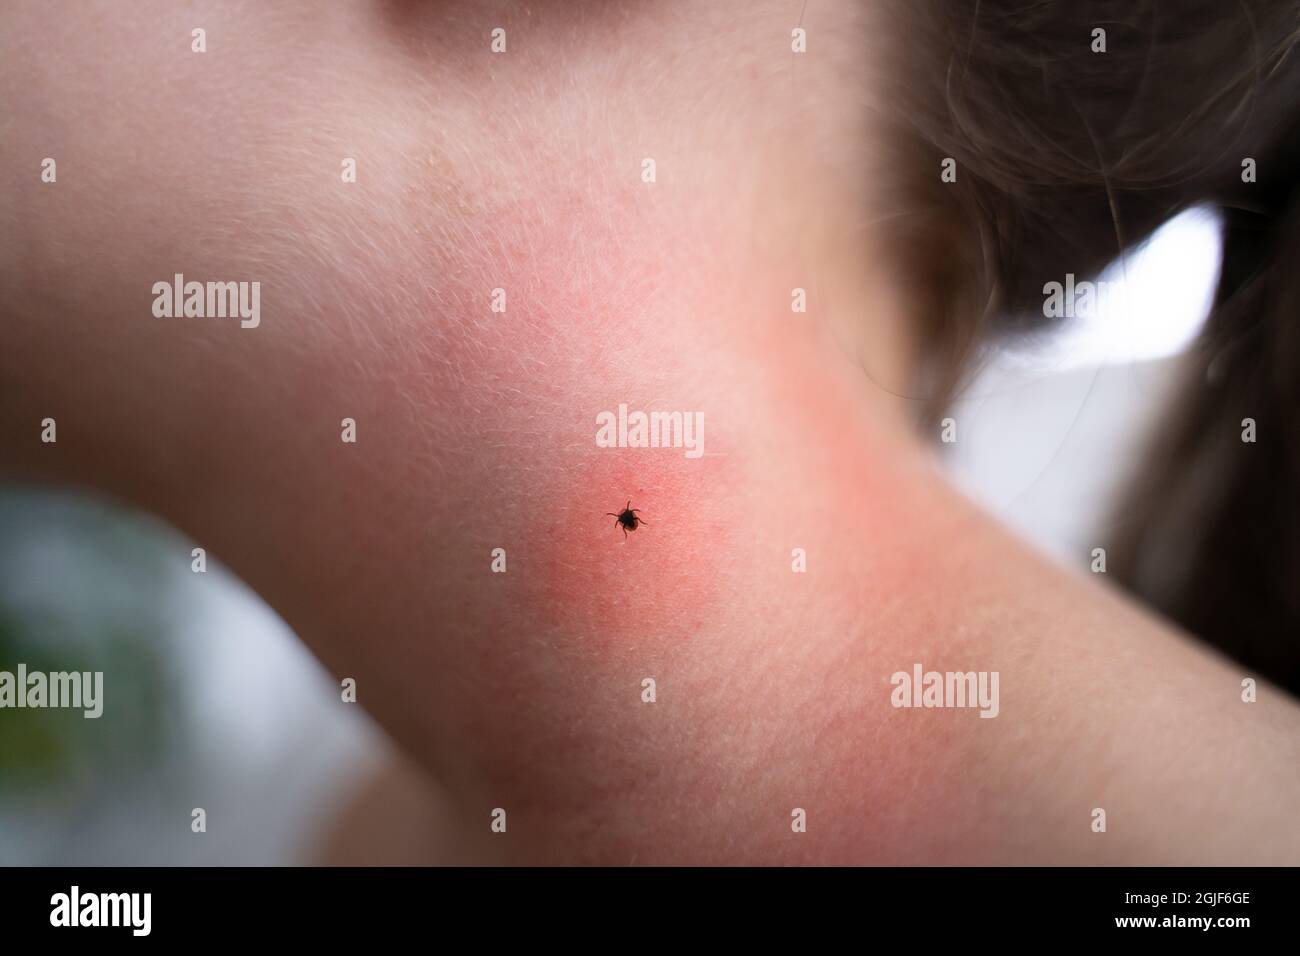 Encéphalite insecte ou parasite arachnide sous la peau de l'enfant Banque D'Images